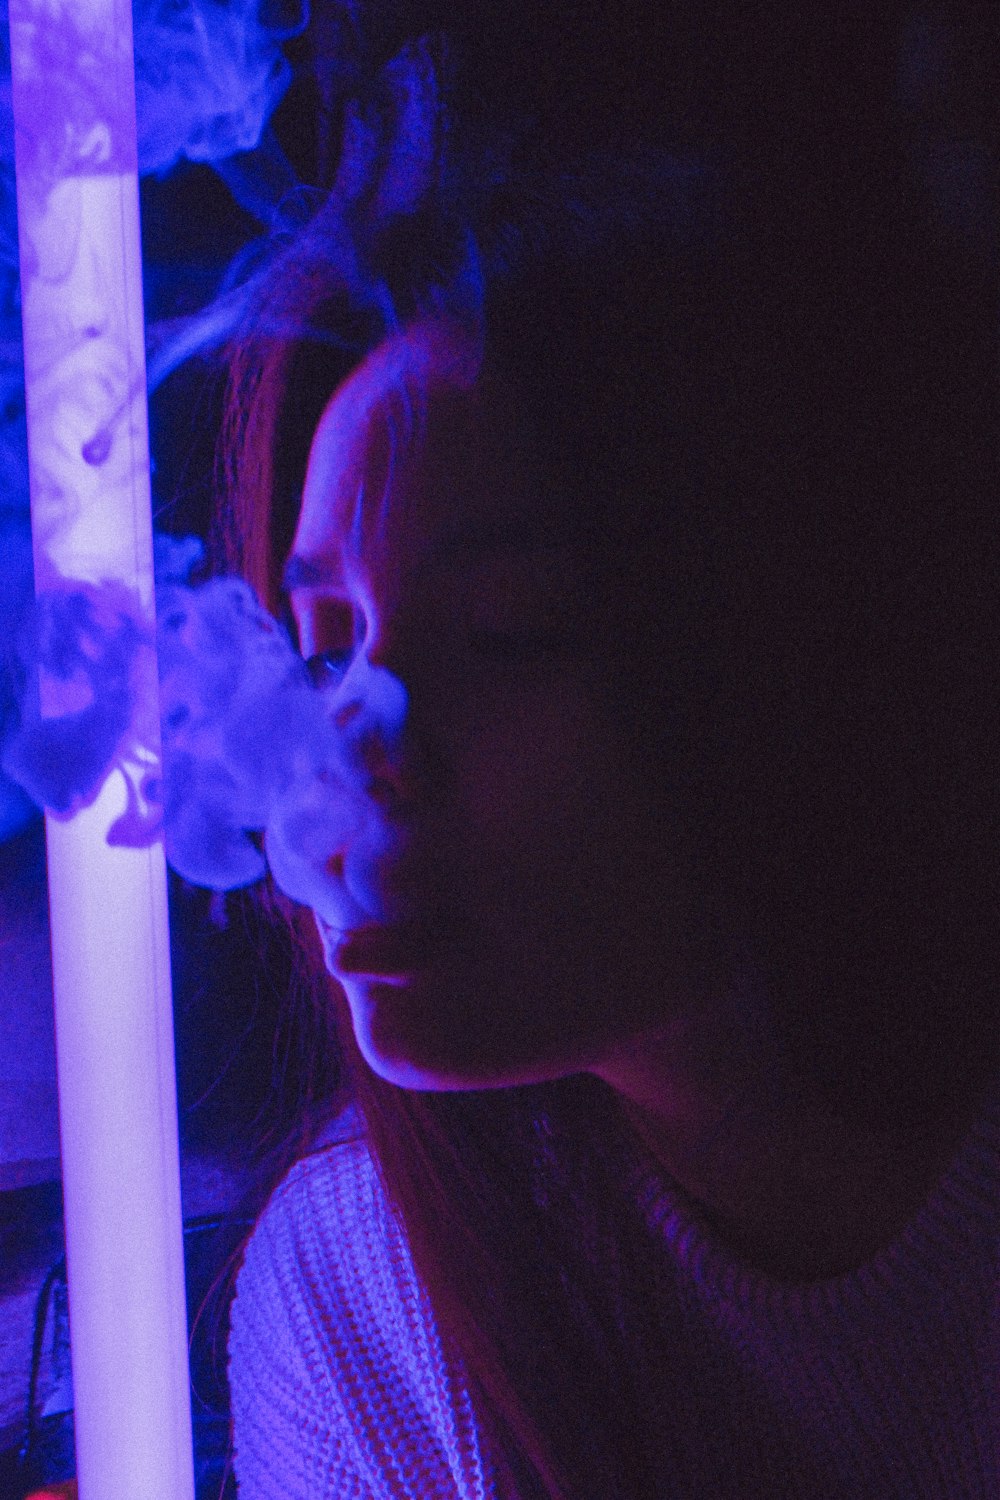 donna in top girocollo bianco vicino alla luce mentre fuma